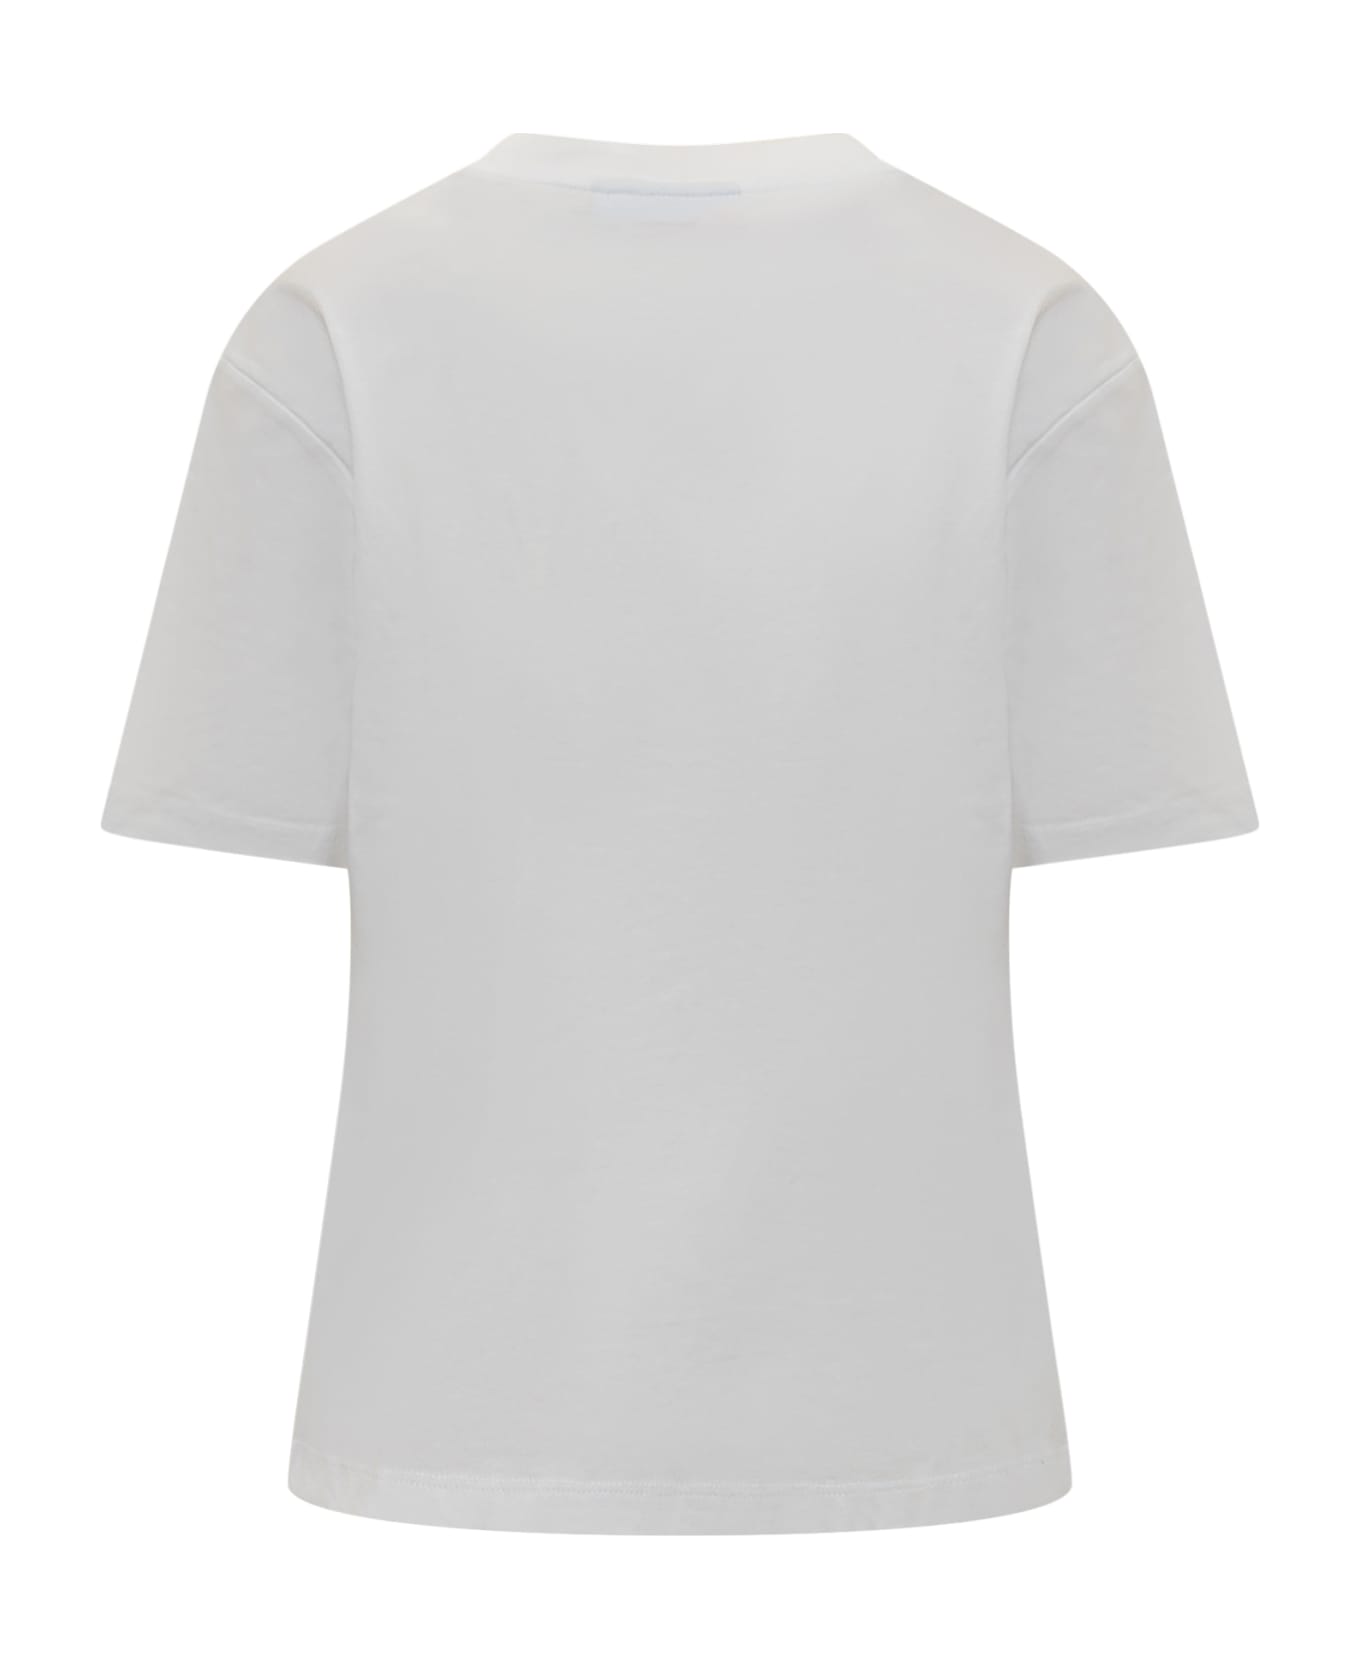 Chiara Ferragni Punk T-shirt - WHITE